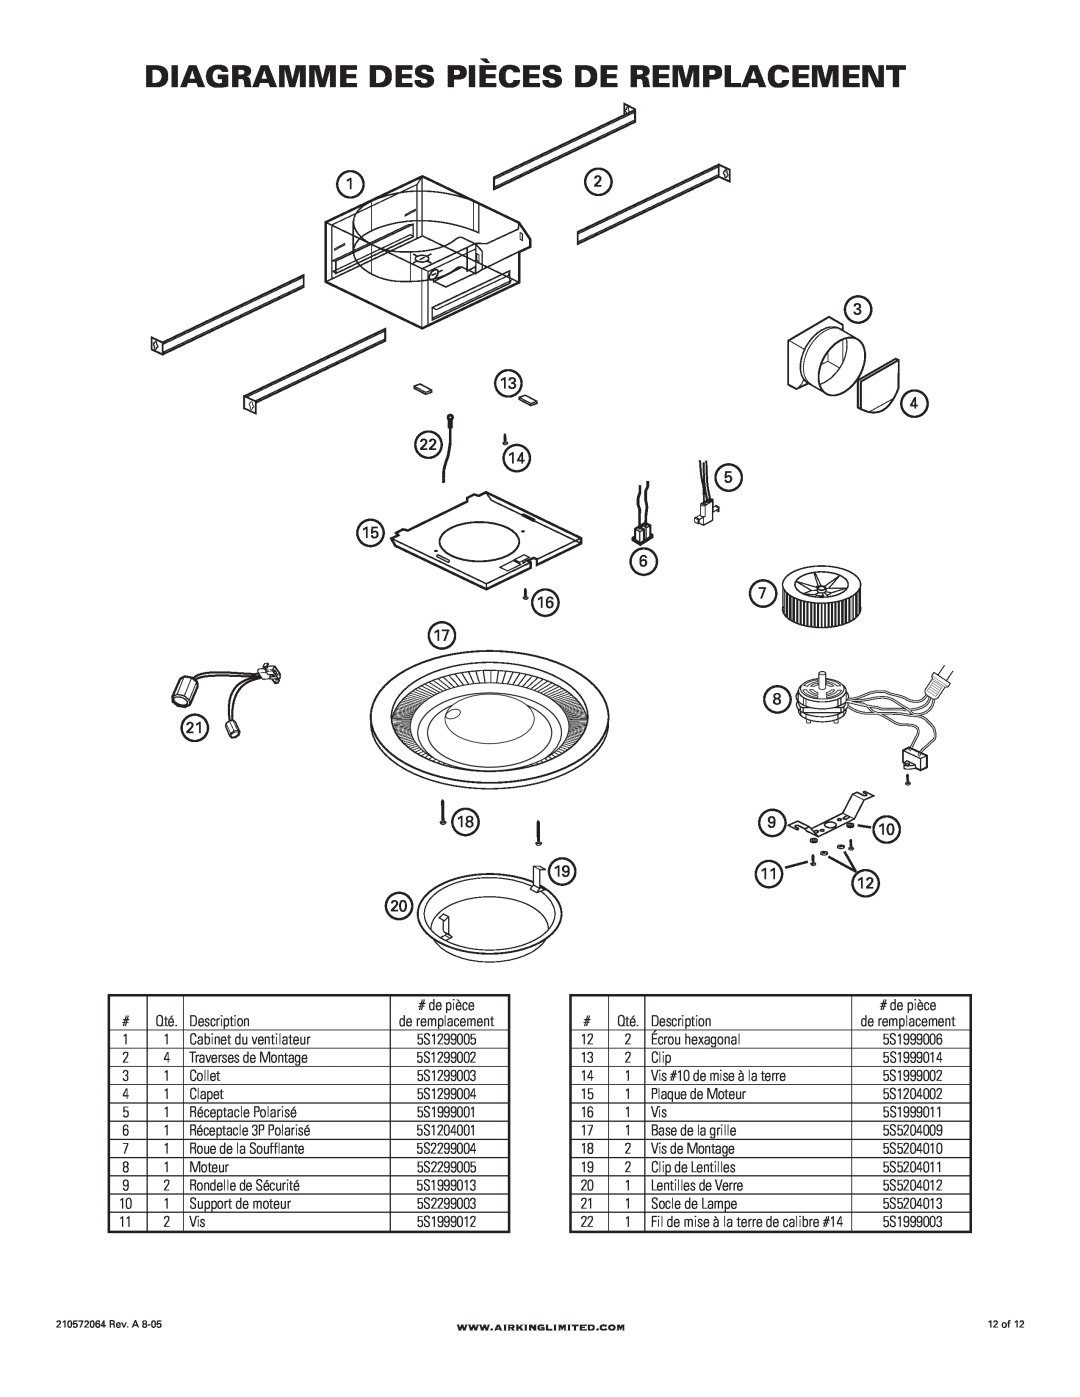 Air King DRLC107 manual Diagramme Des Pièces De Remplacement 